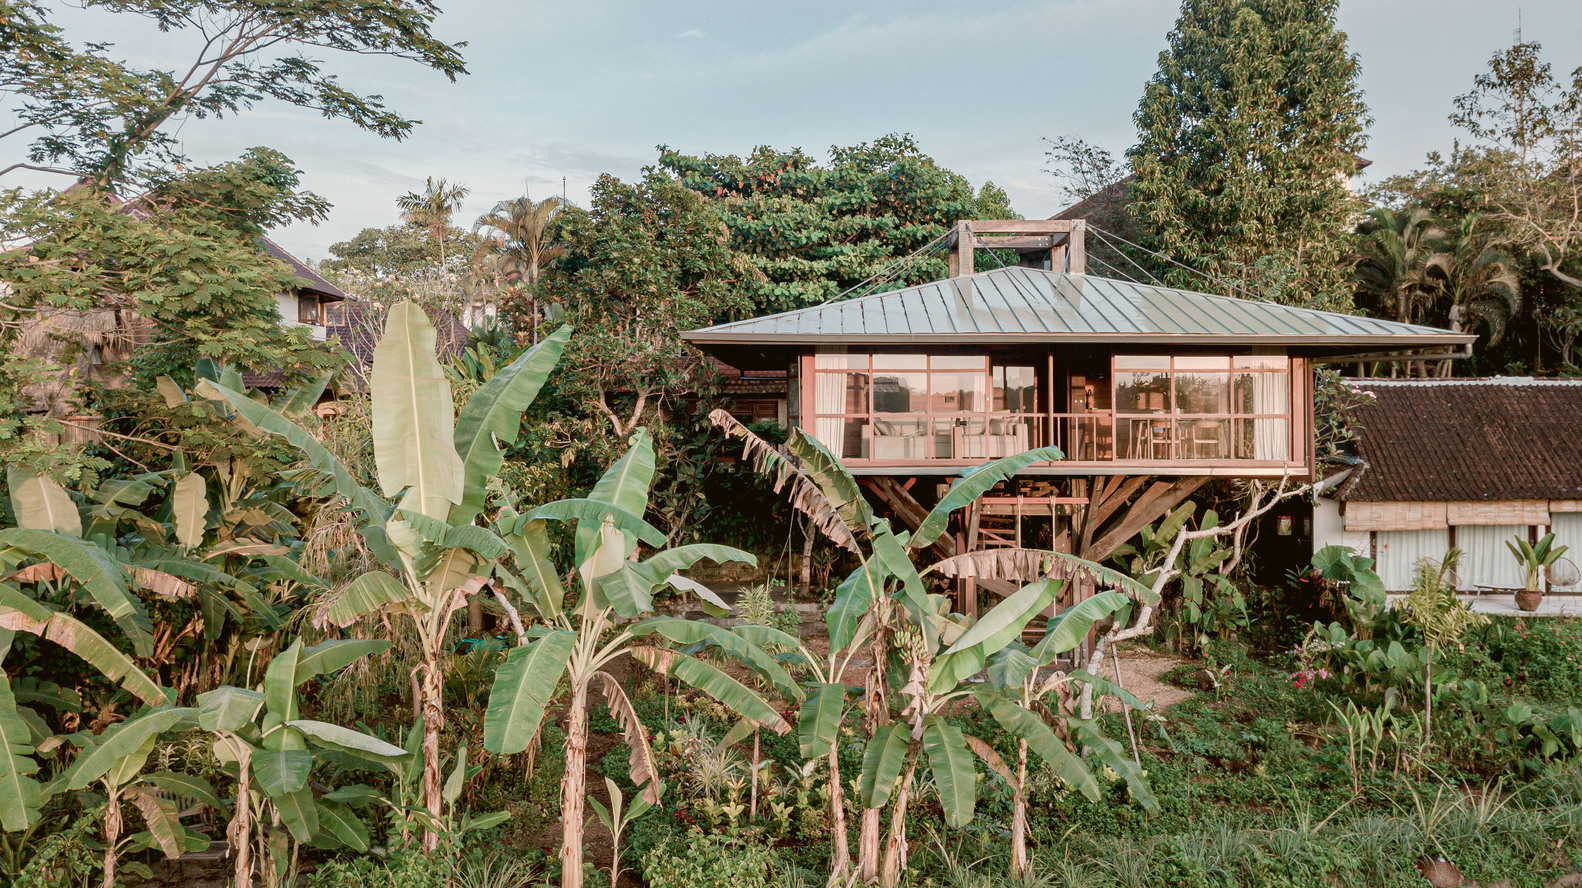 Ngôi nhà gỗ hình cái cây độc đáo ở Bali, nằm lọt thỏm giữa khu vườn nhiệt đới đầy bình yên - Ảnh 10.